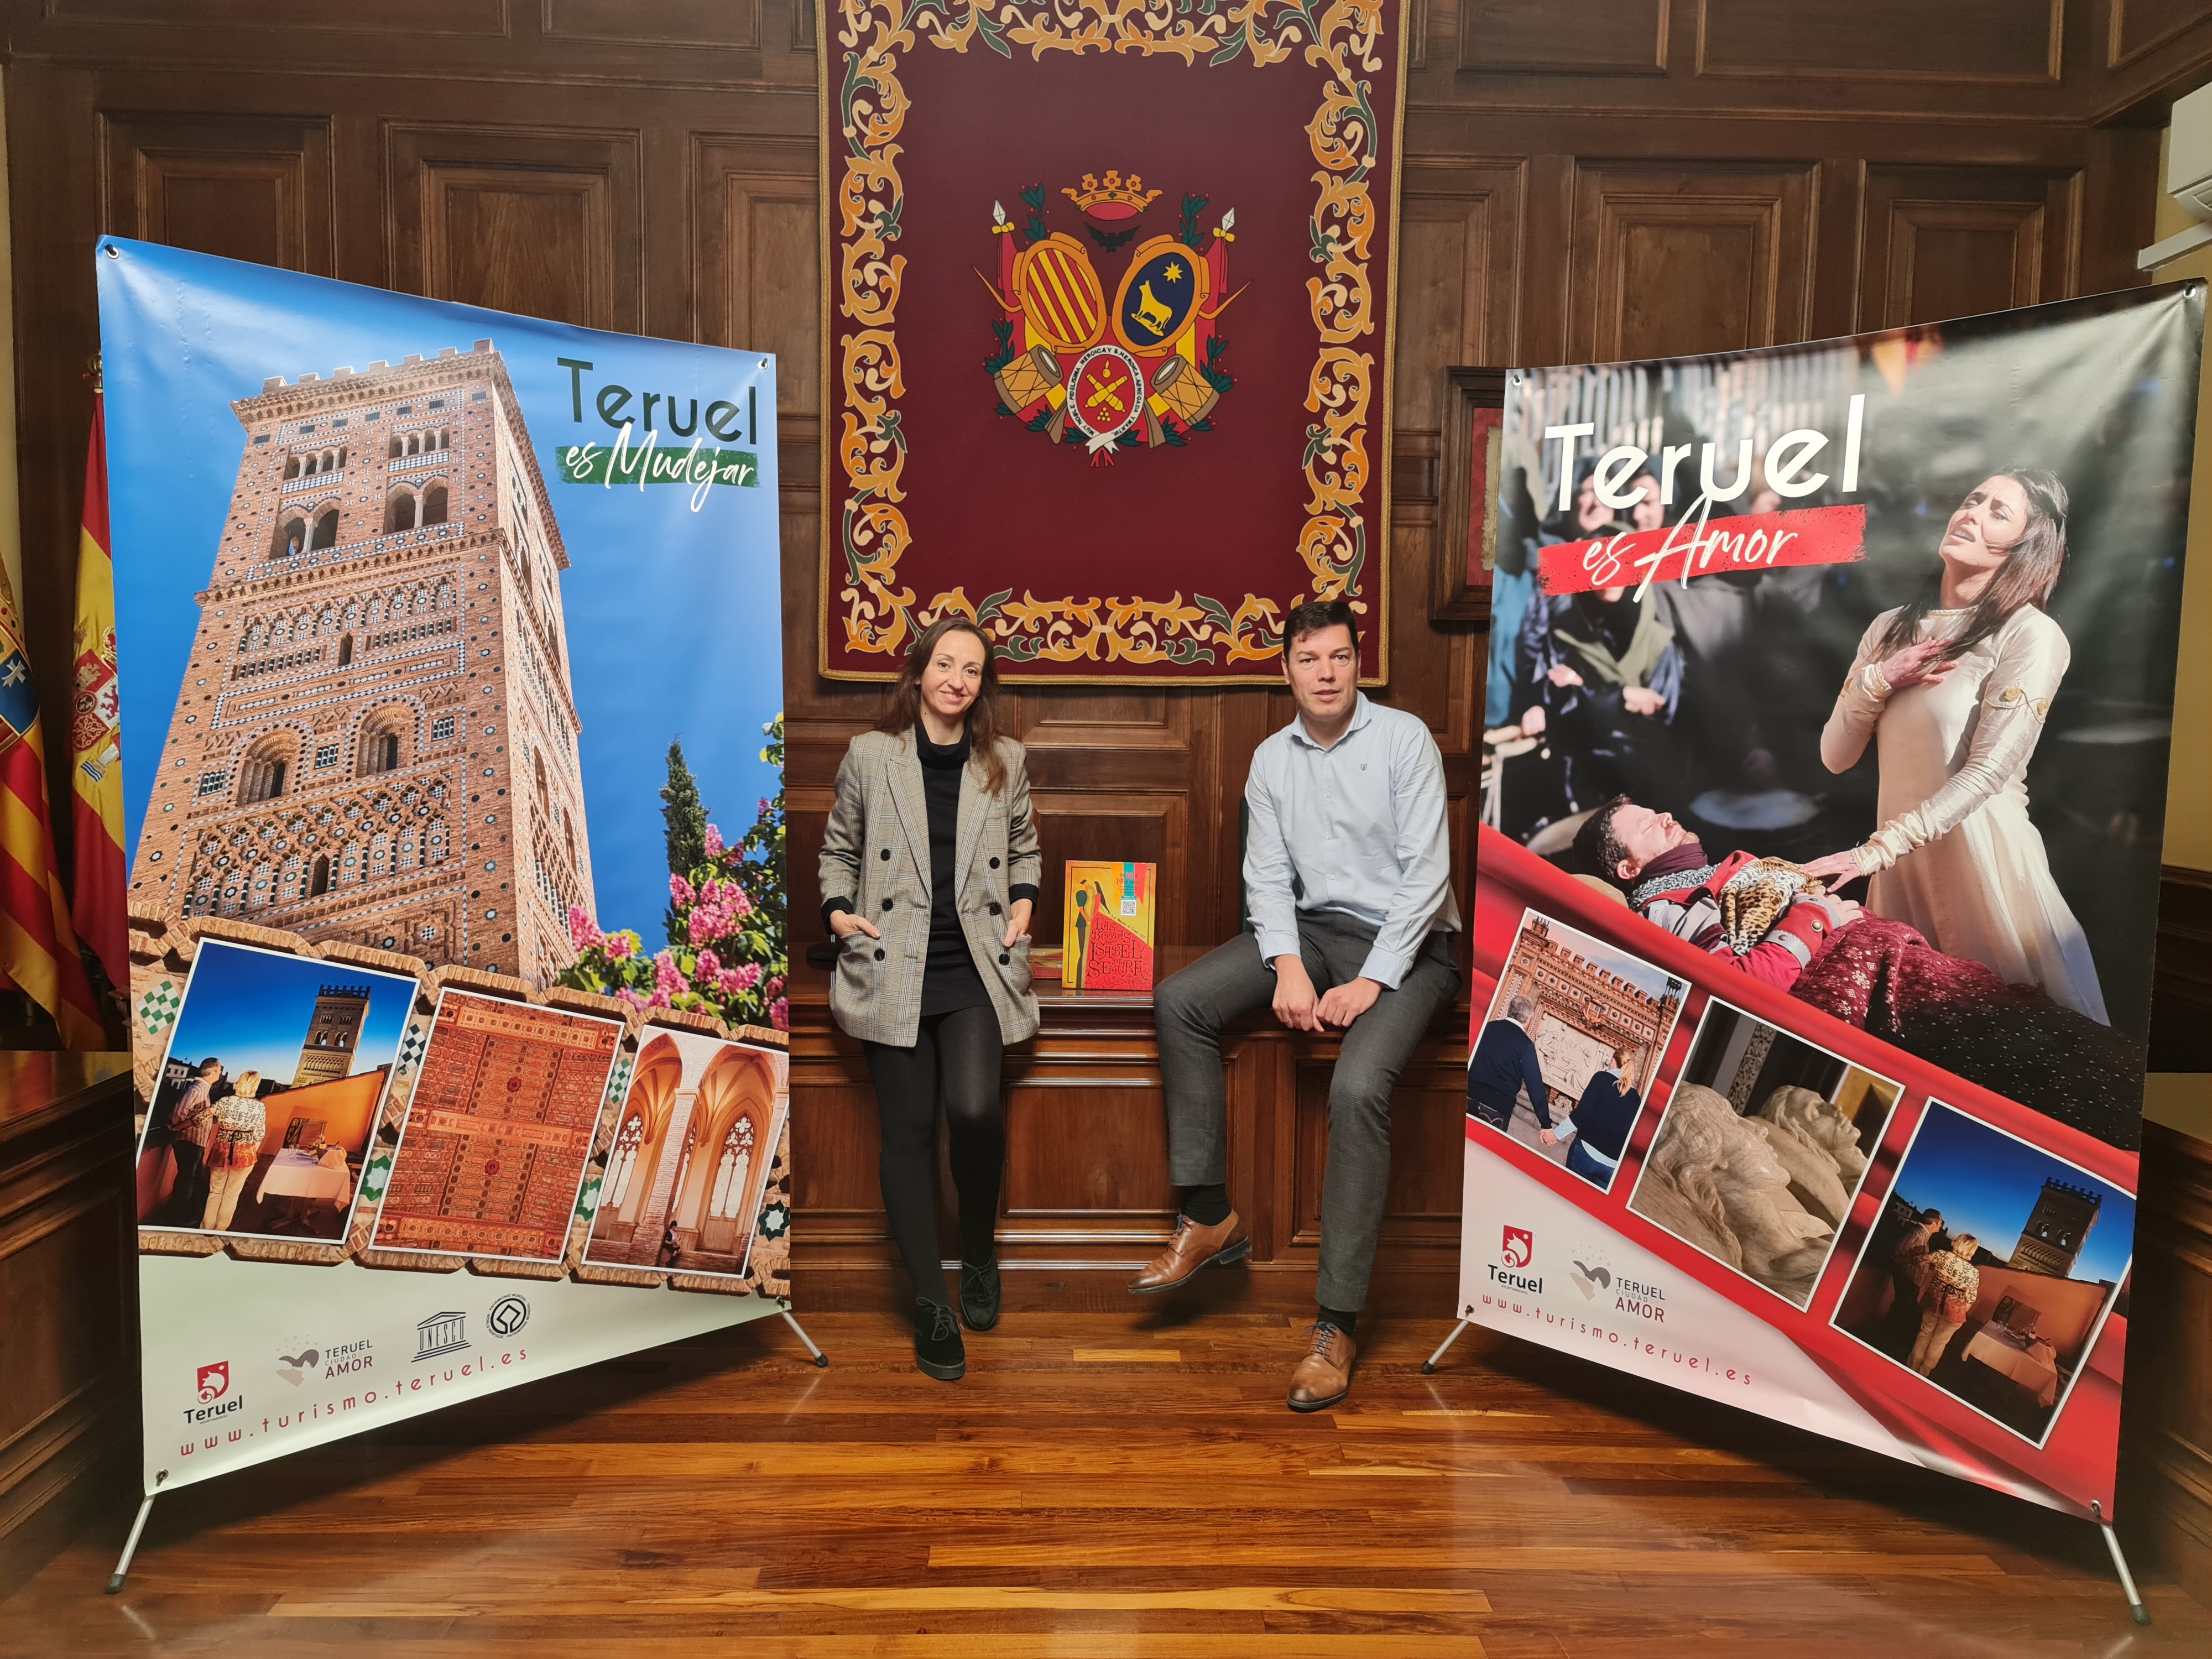 La ciudad de Teruel se promocionarÃ¡ en Fitur destacando este aÃ±o su mudÃ©jar Patrimonio de la Humanidad y Las Bodas de Isabel que vuelven con normalidad tras la pandemia